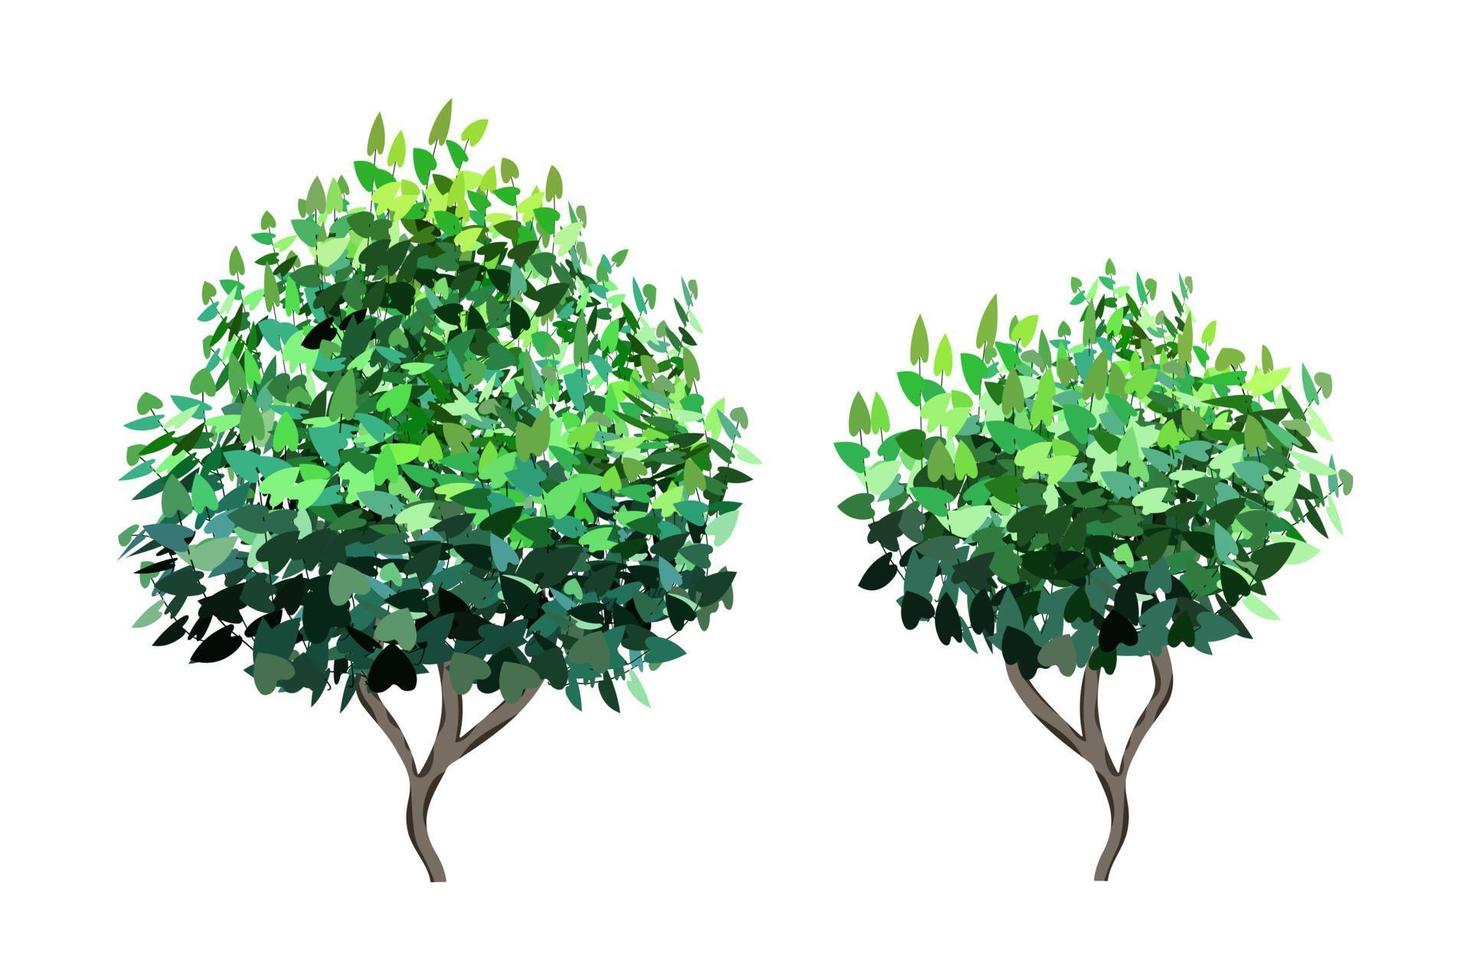 Planta verde ornamental en forma de seto.Arco de ivy.Arbusto de jardín realista, arbusto de temporada, boj, follaje de arbusto de corona de árbol. vector